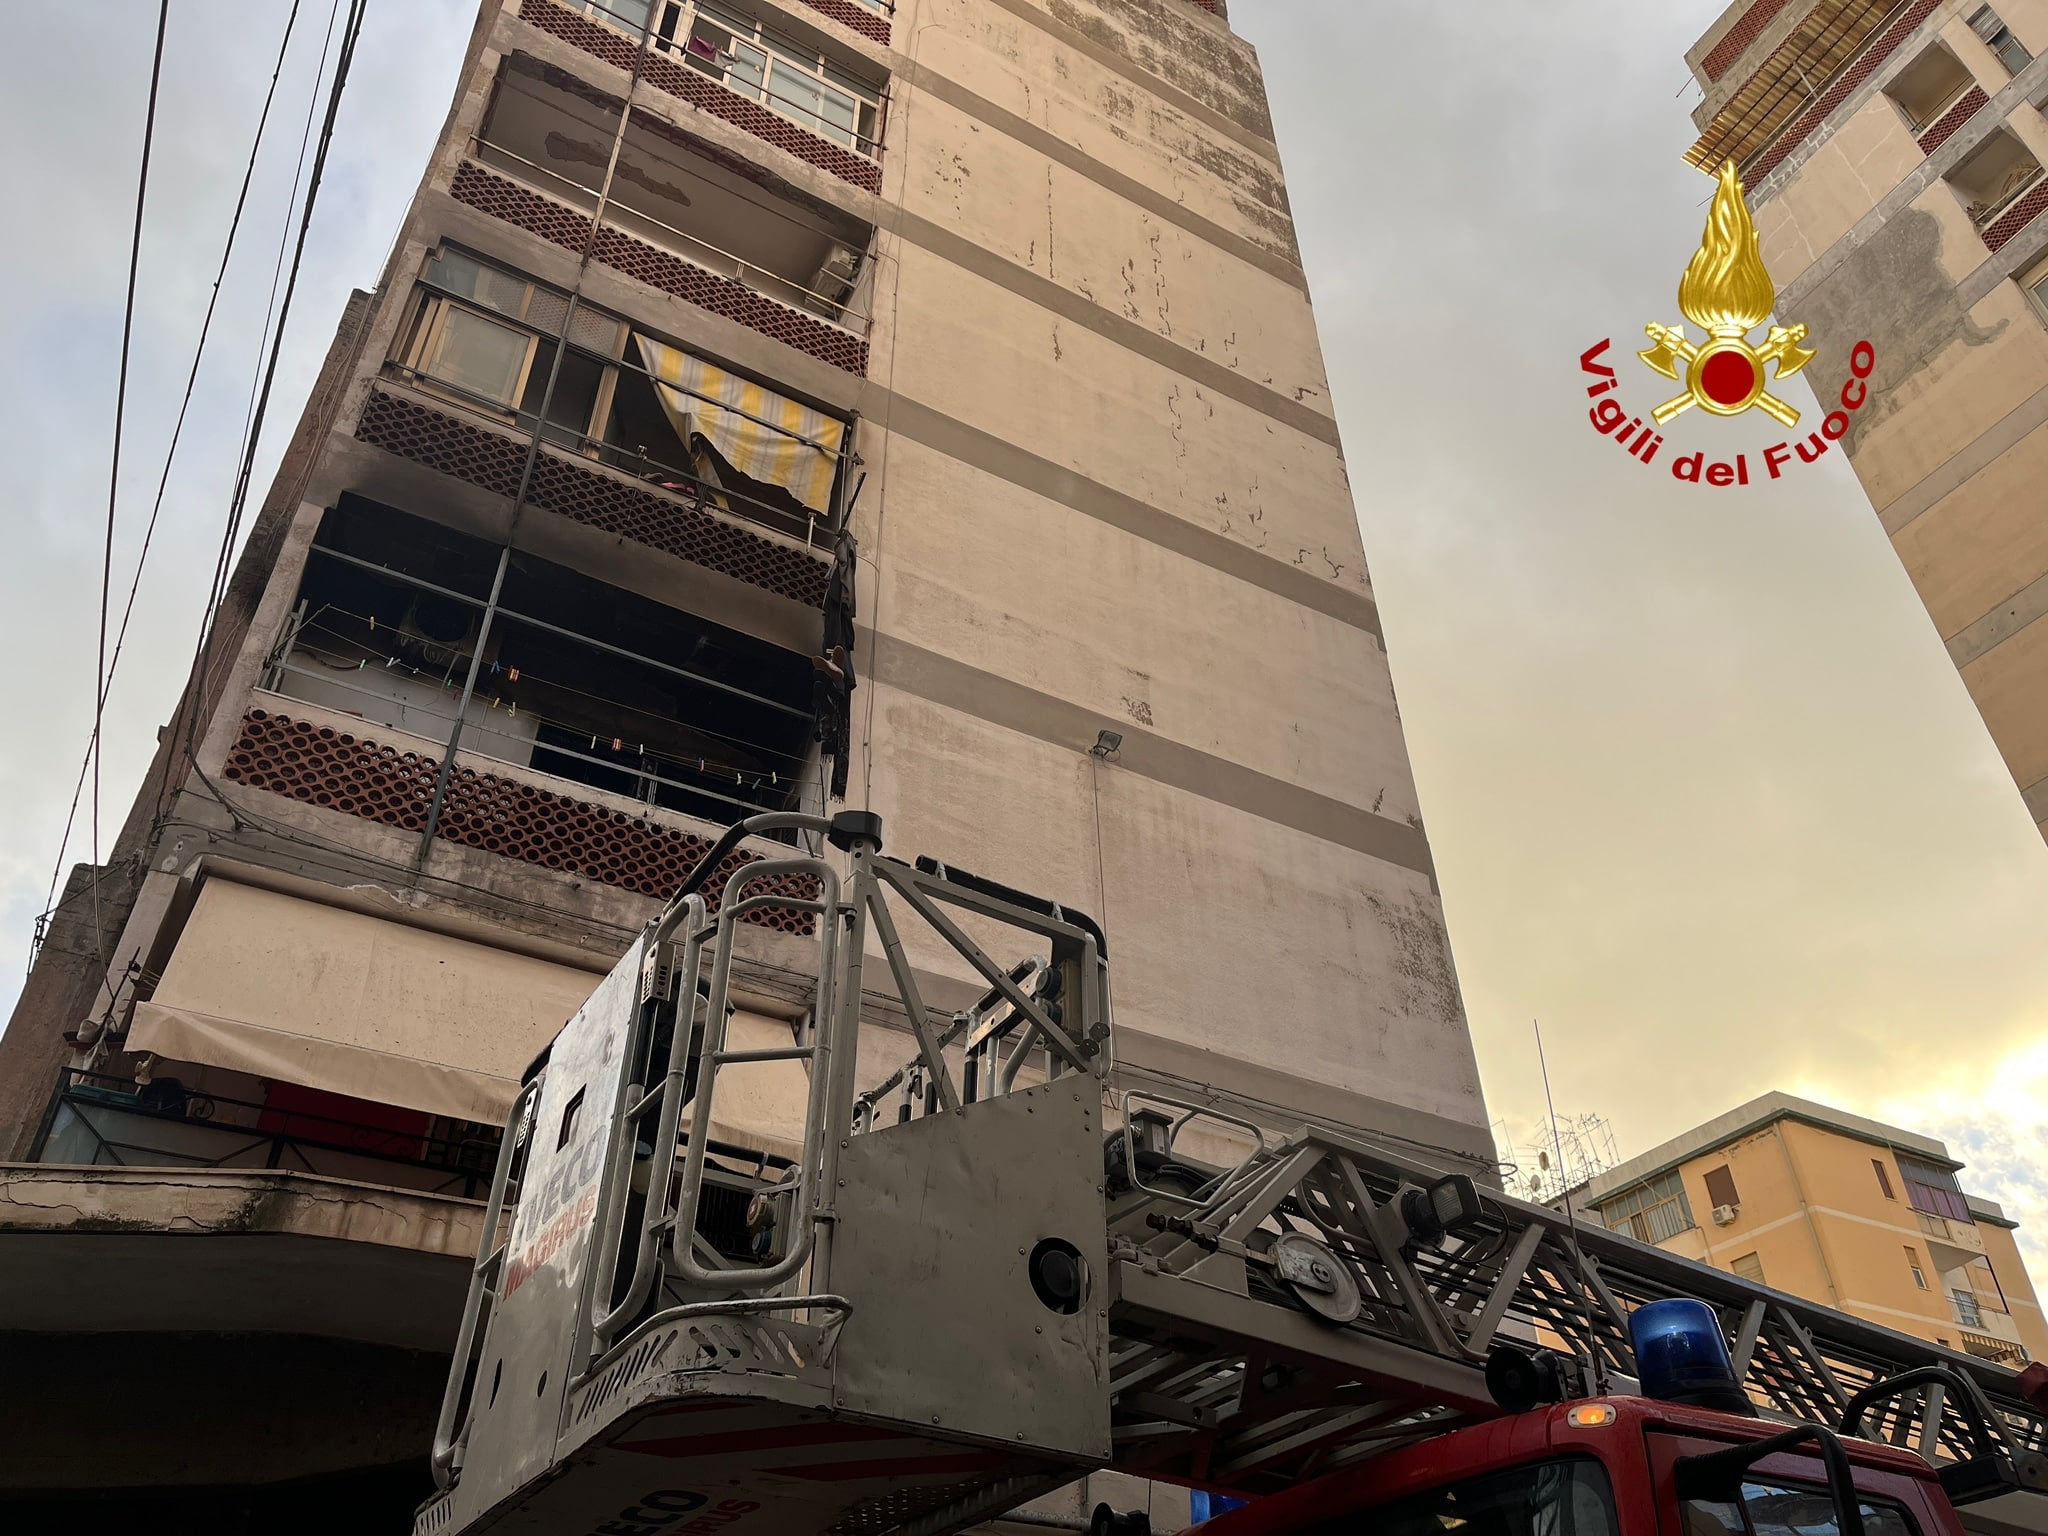 Incendio a Catania: 9 persone evacuate, tra loro anche un disabile in carrozzina – FOTO